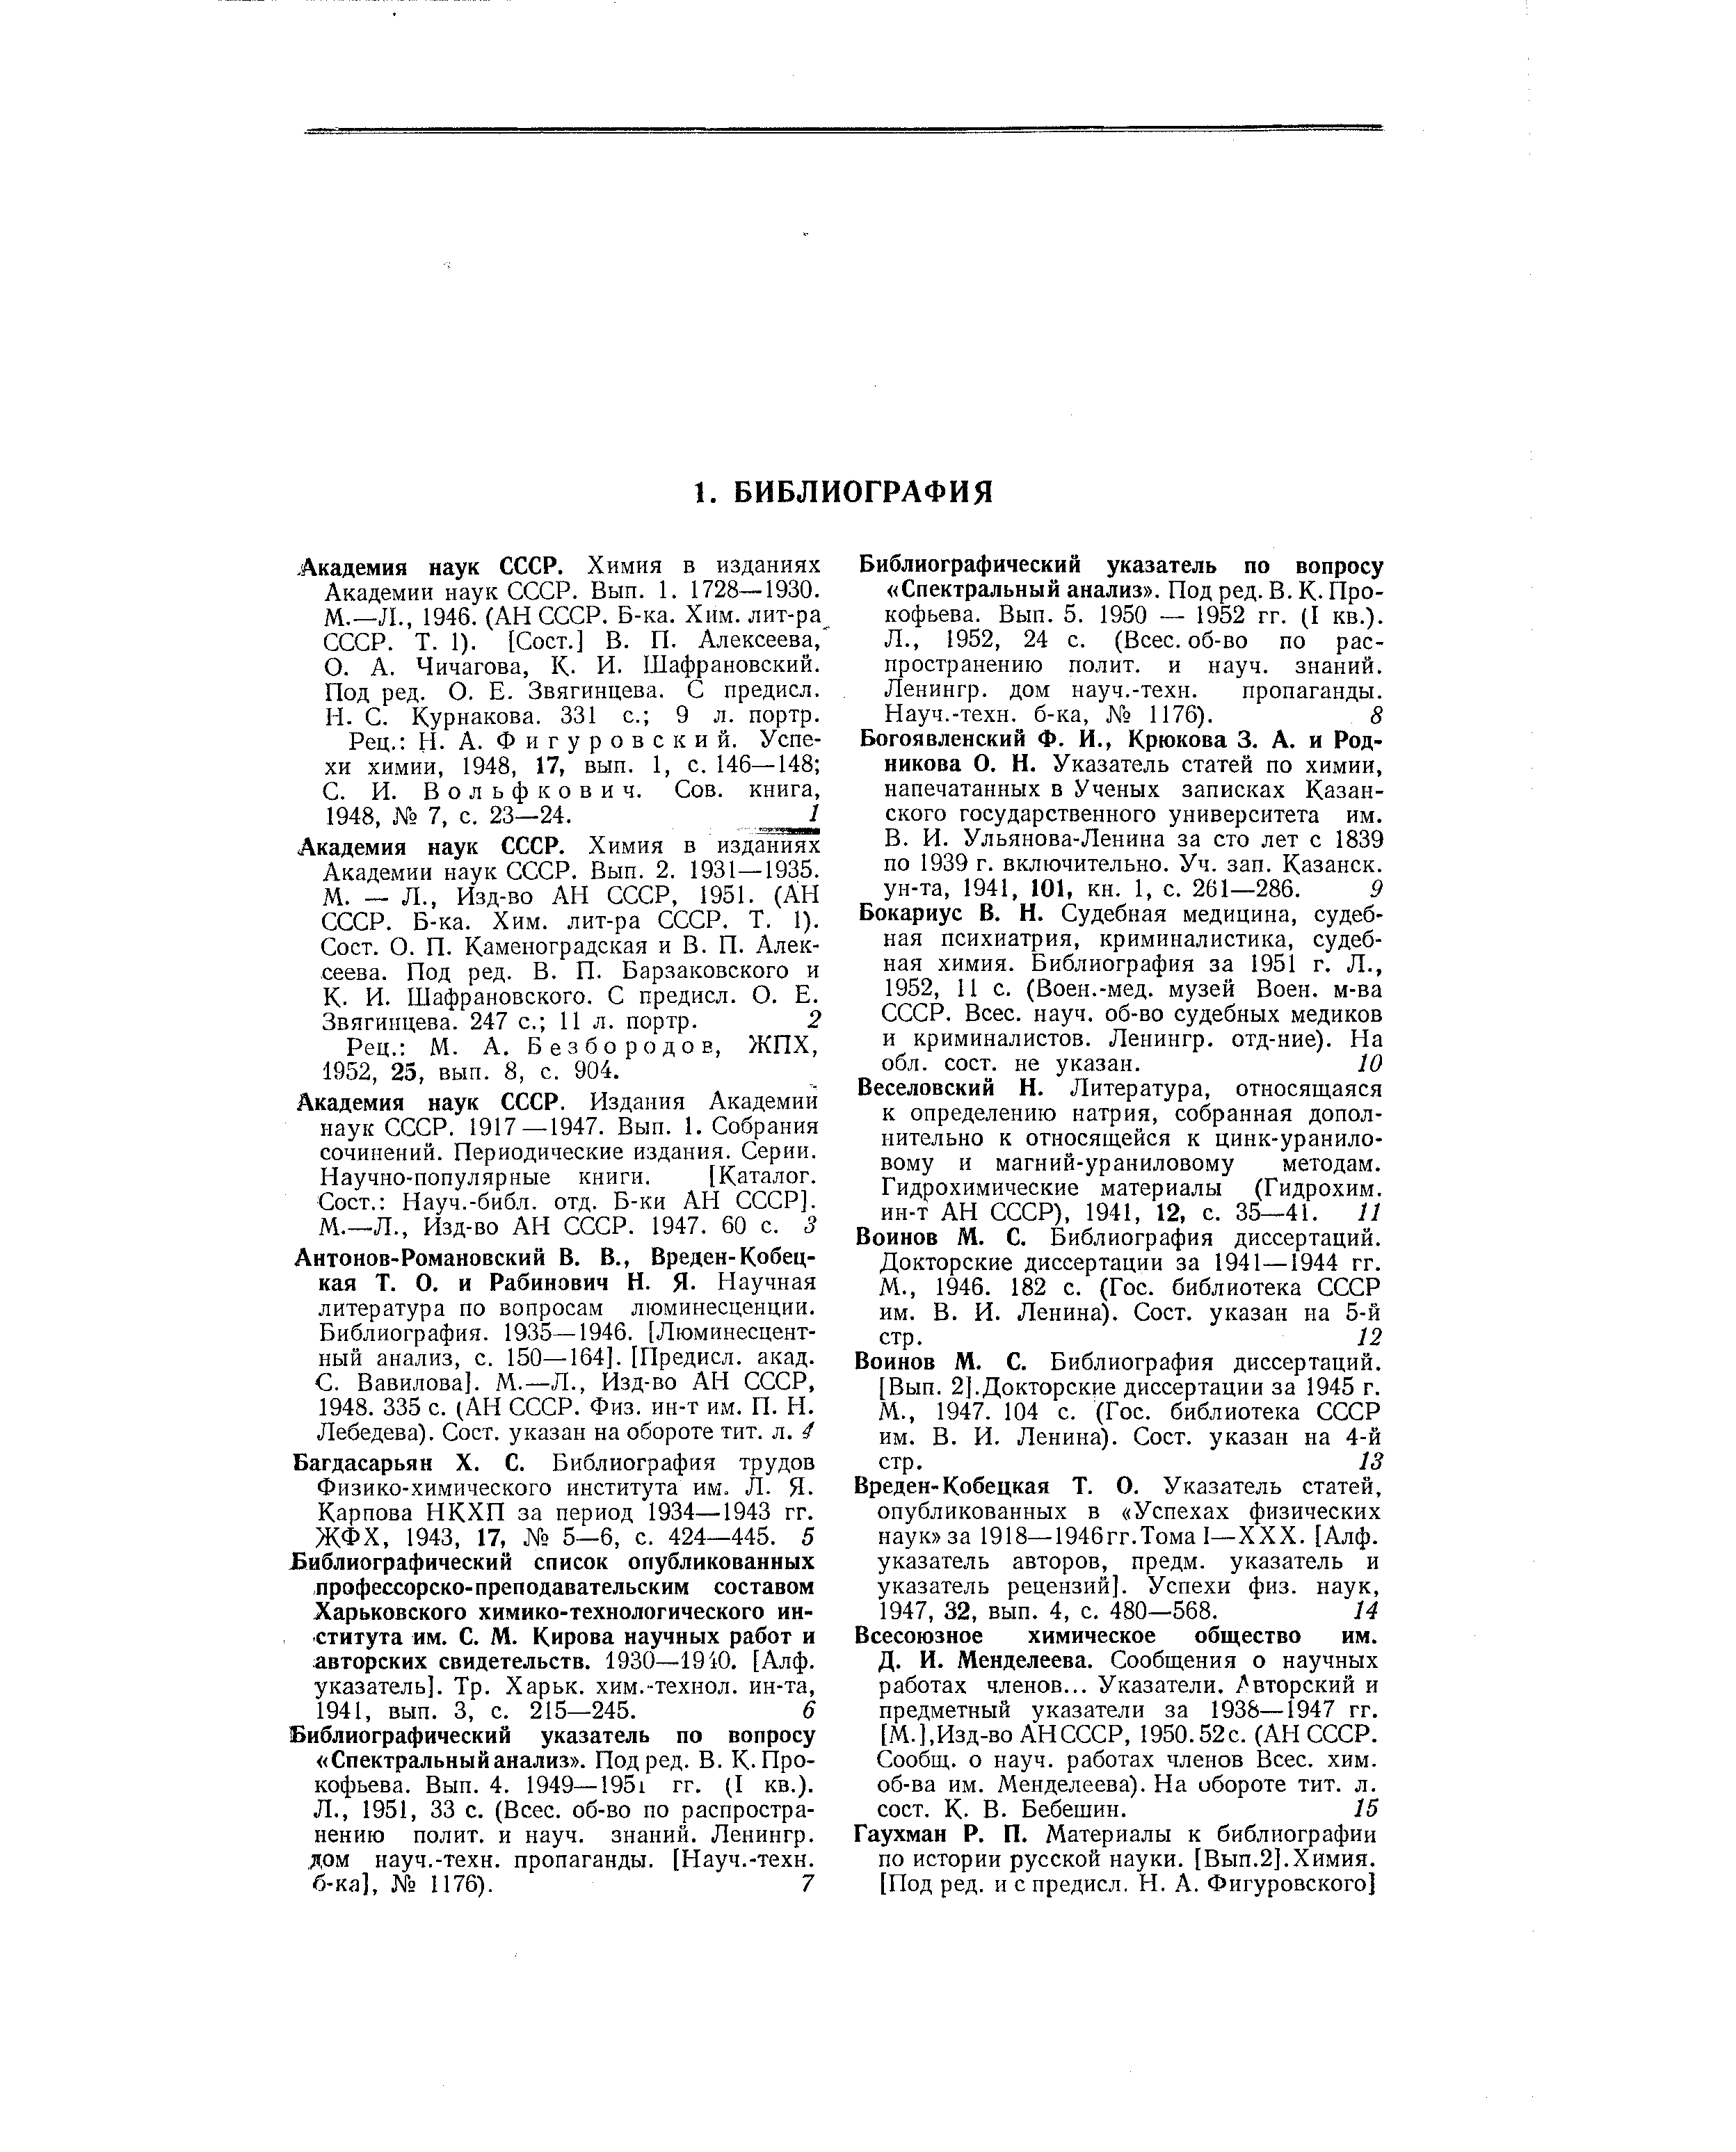 Безбородов, ЖПХ, 1952, 25, вып. 8, с. 904.